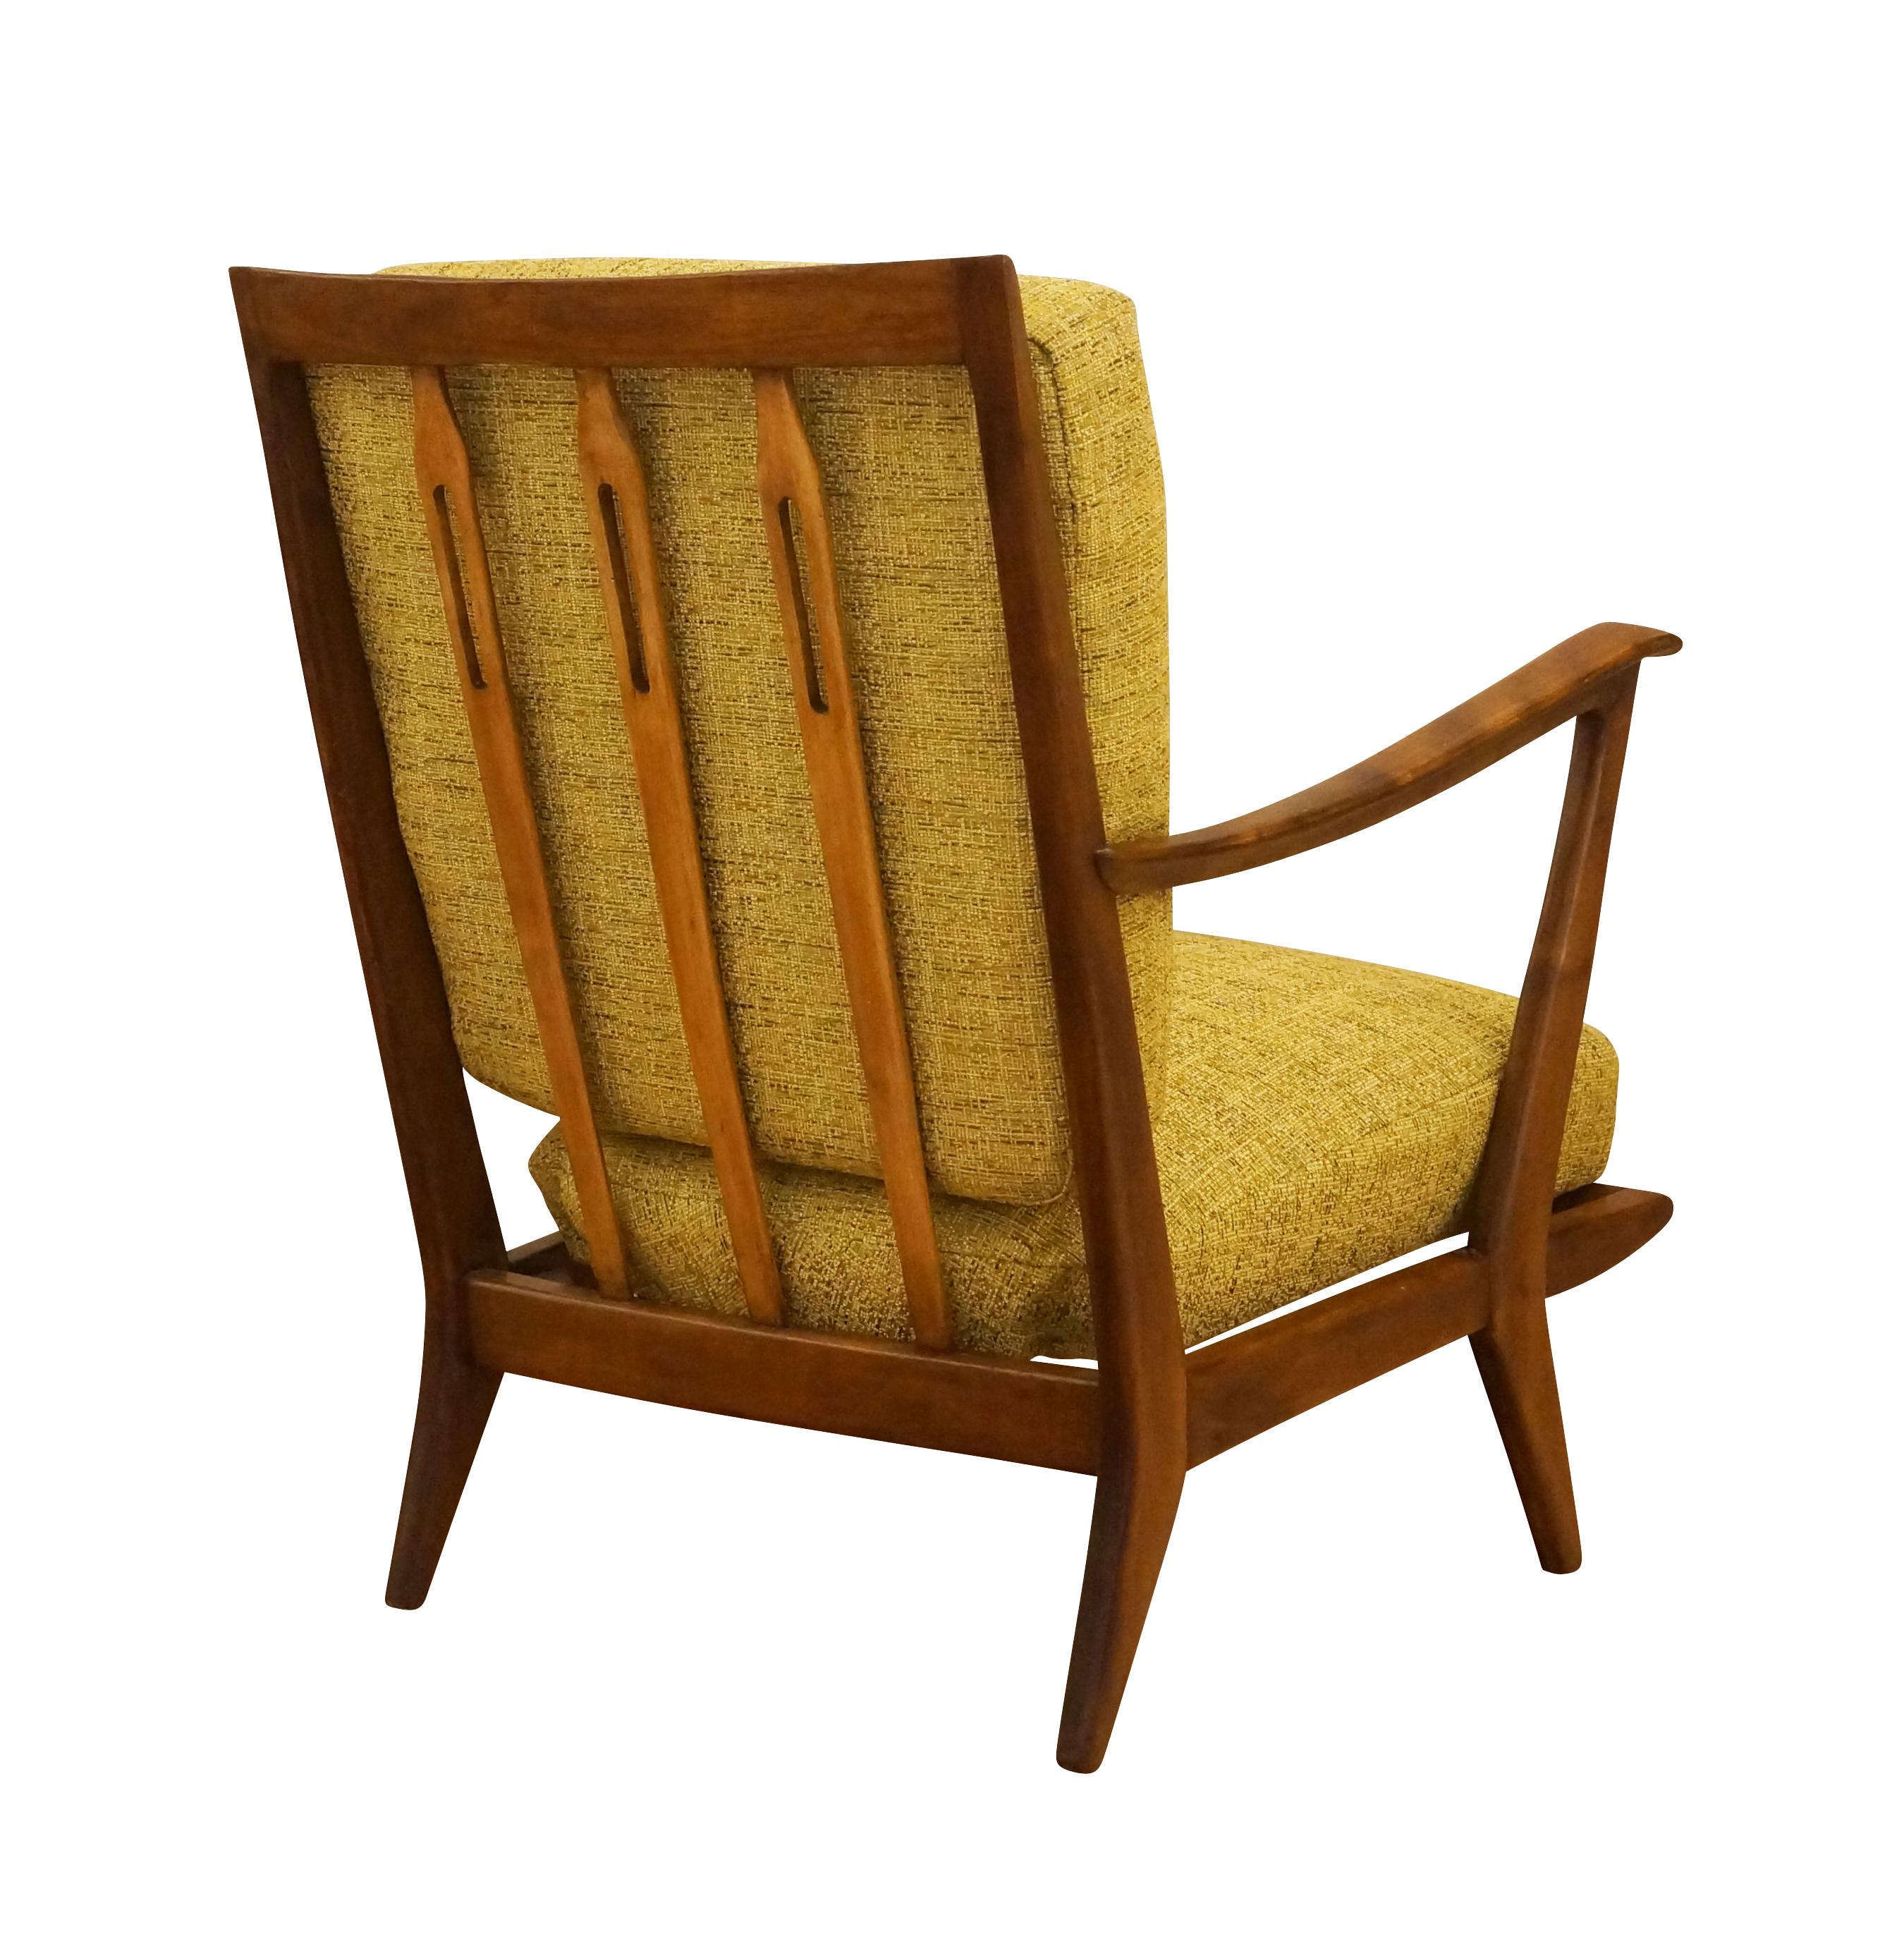 Ein Paar skulpturale Sessel aus Nussbaumholz, Variante des Modells 516, entworfen von Gio Ponti für Cassina im Jahr 1955. Pontis Kreativität zeigt sich in den vielen Details wie den ansteigenden offenen Armlehnen, dem sich verjüngenden Rahmen und